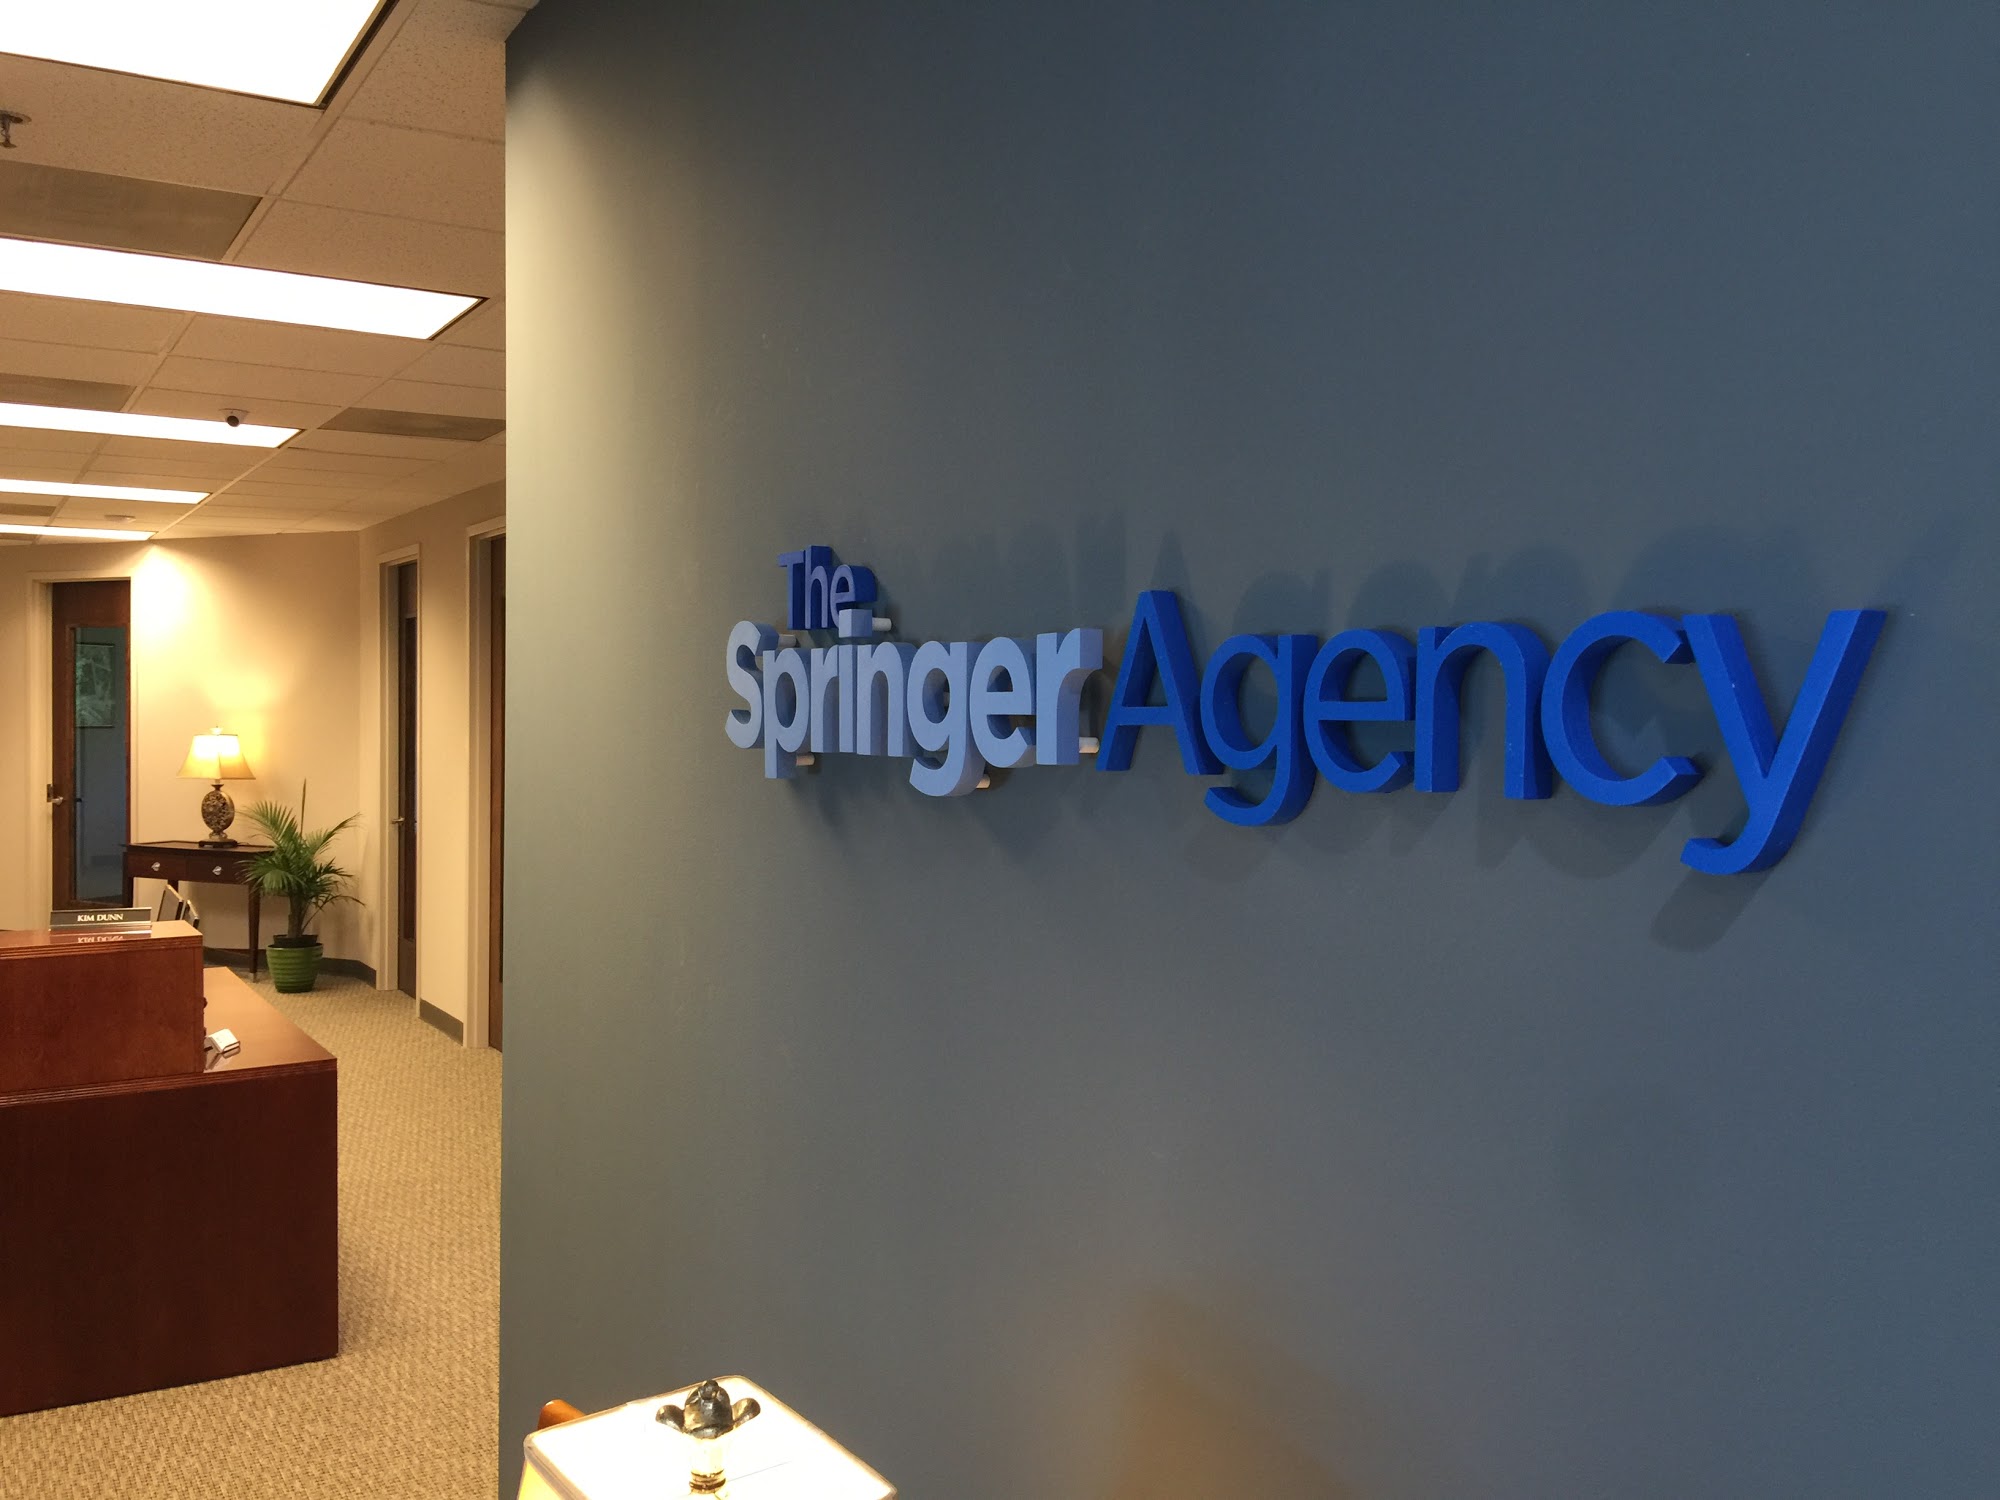 The Springer Agency